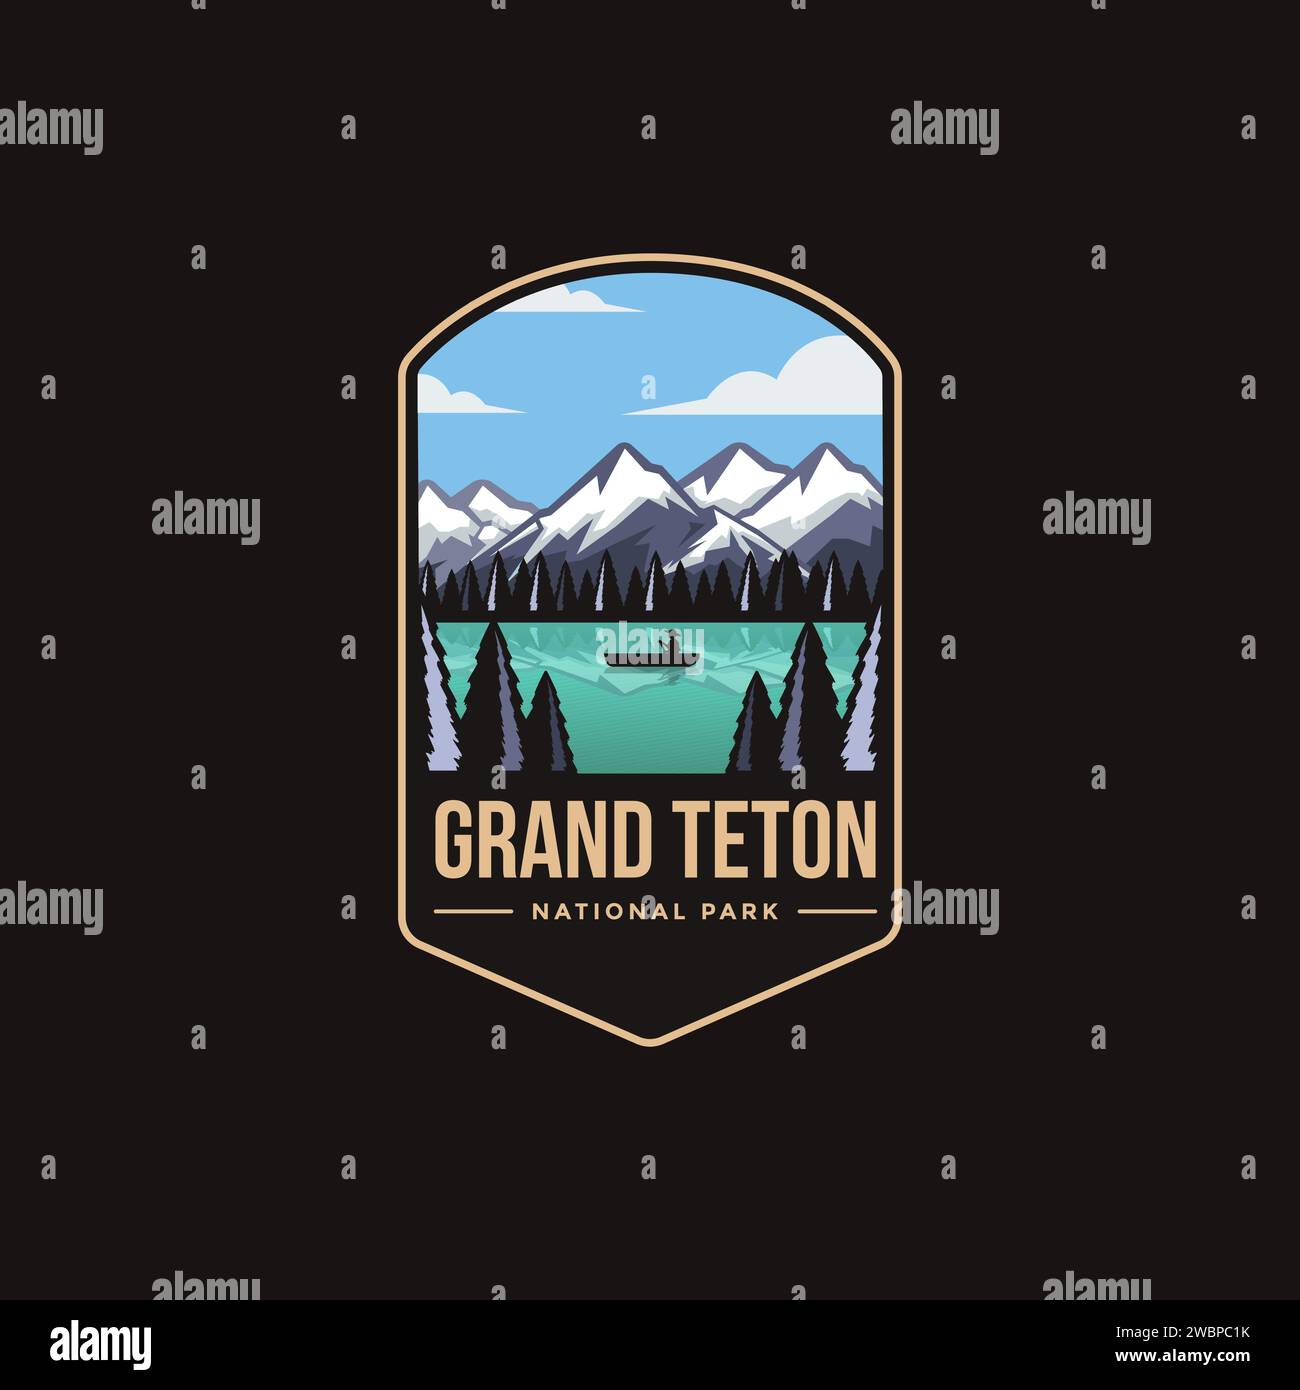 Emblème patch logo illustration du parc national de Grand Teton sur fond sombre Illustration de Vecteur